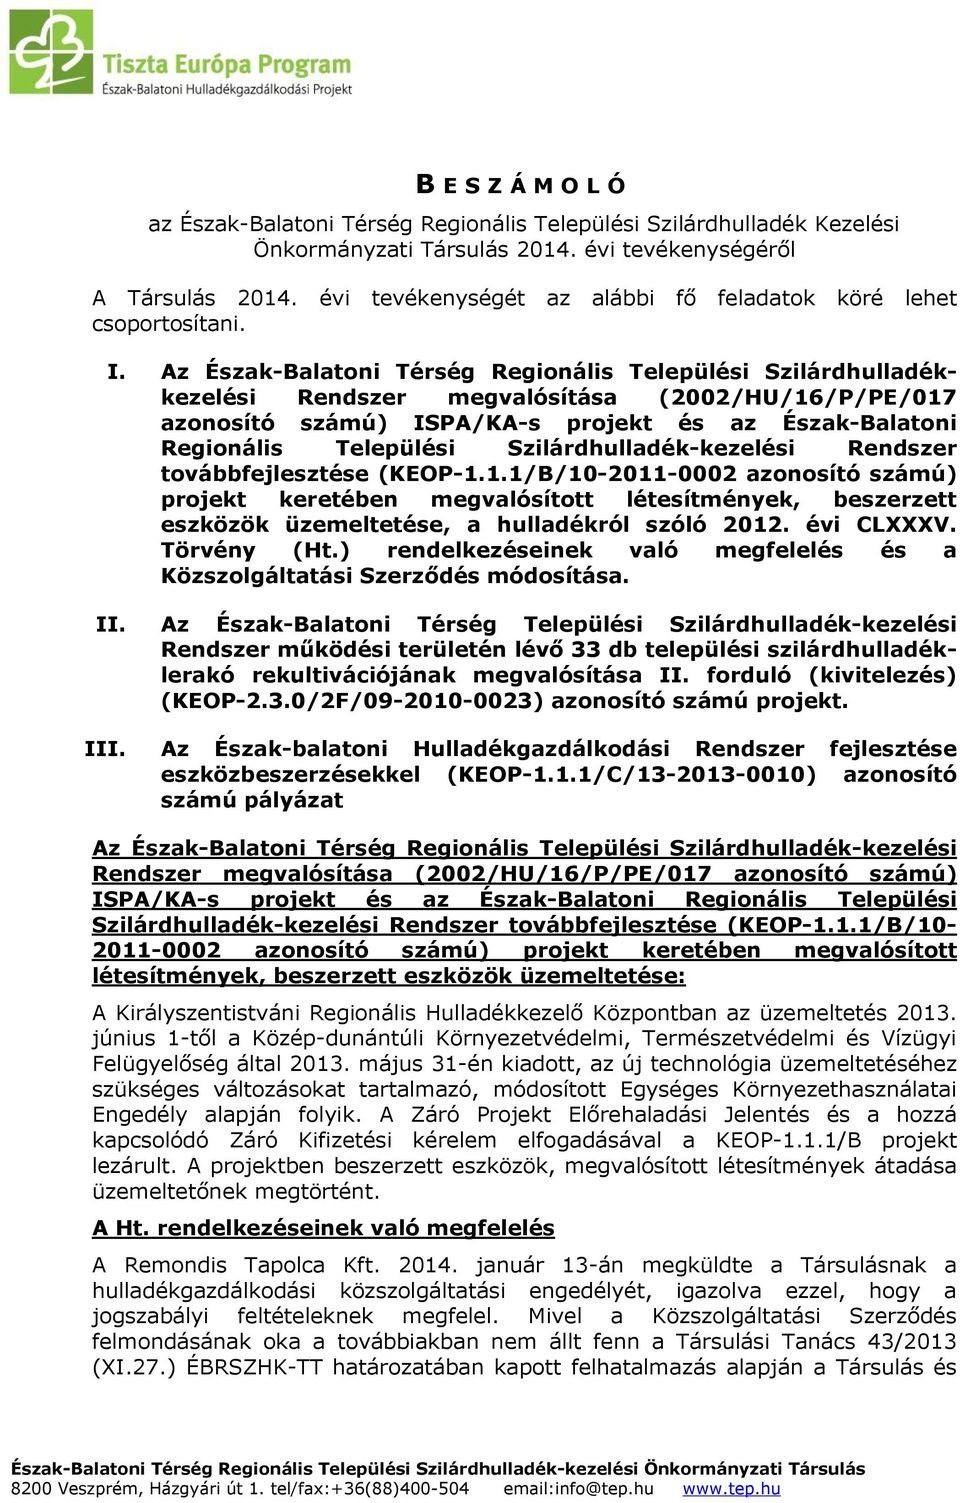 Az Észak-Balatoni Térség Regionális Települési Szilárdhulladékkezelési Rendszer megvalósítása (2002/HU/16/P/PE/017 azonosító számú) ISPA/KA-s projekt és az Észak-Balatoni Regionális Települési